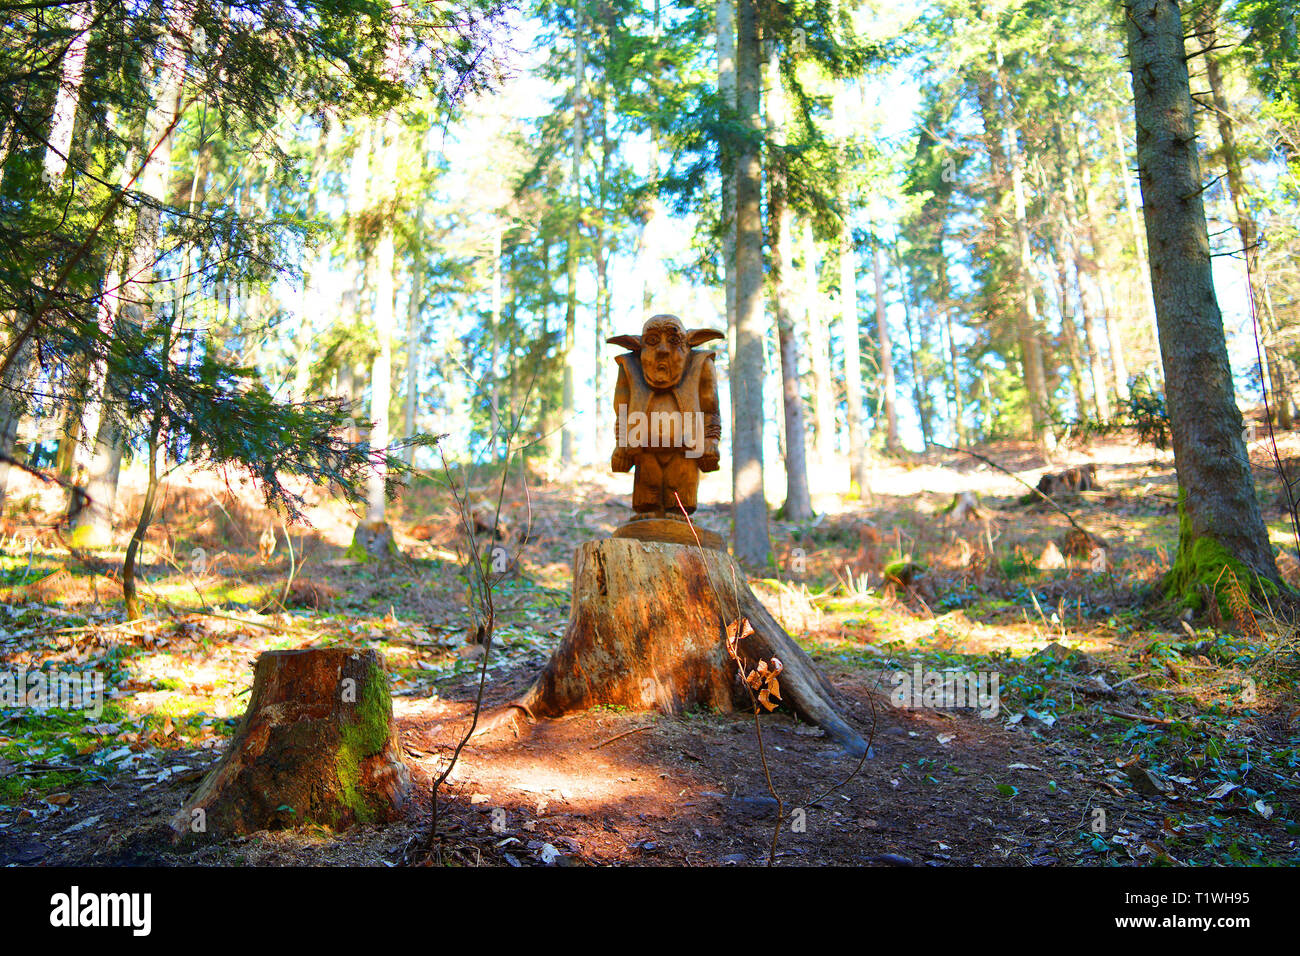 Nain mythique en bois est le gardien de la forêt. Banque D'Images